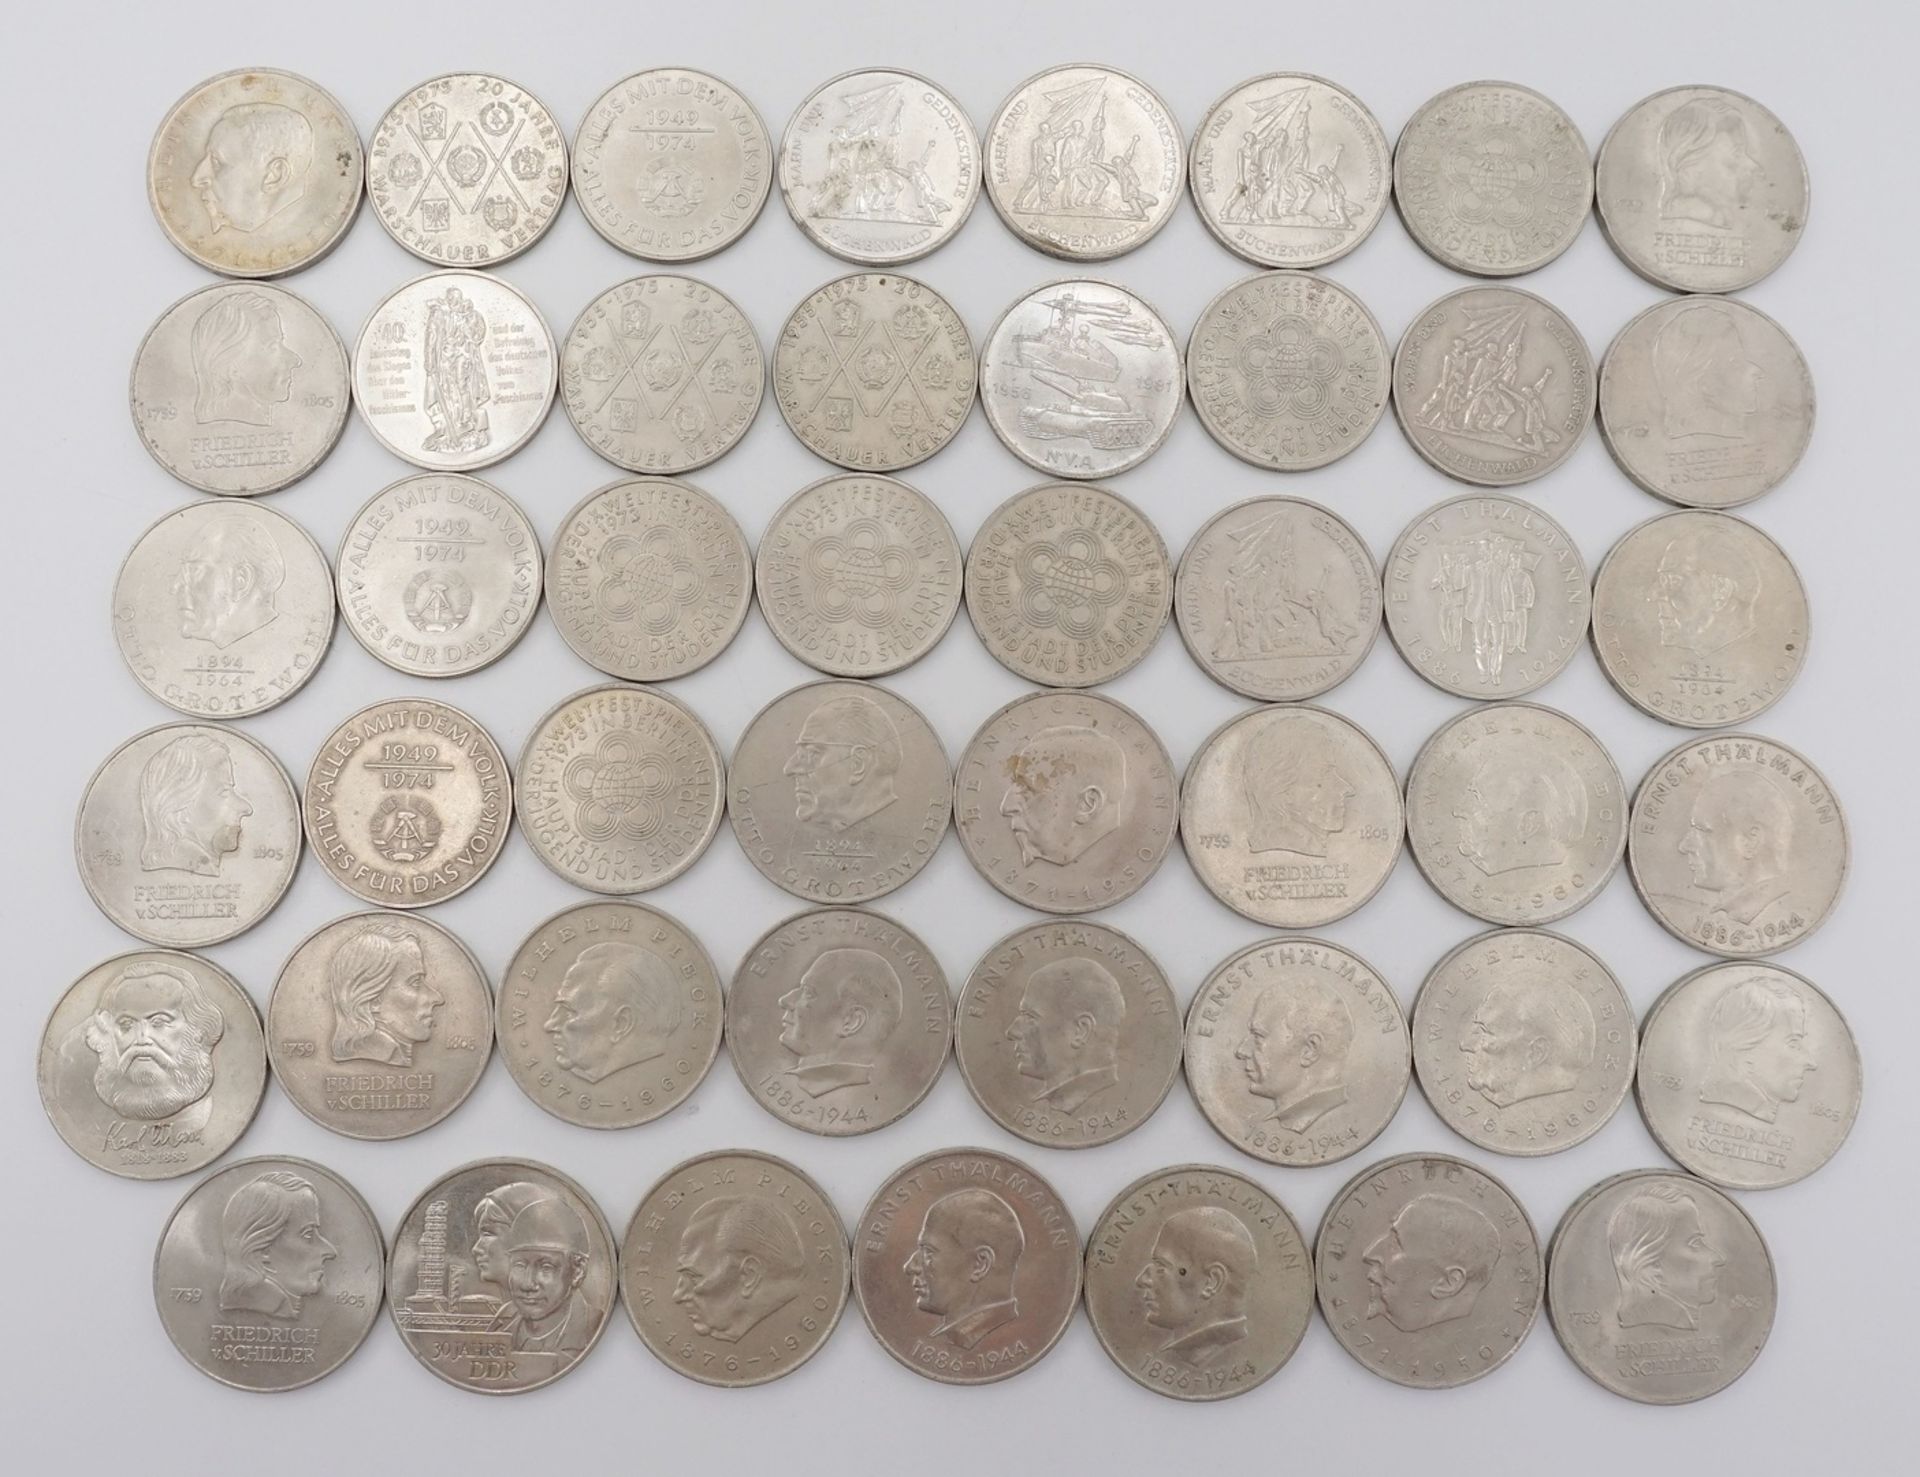 47 Umlaufmünzen, 10 und 20 DDR MarkKupfer / Nickel, 20 x 10 DDR Mark und 27 x 20 DDR Mark, Erhaltung